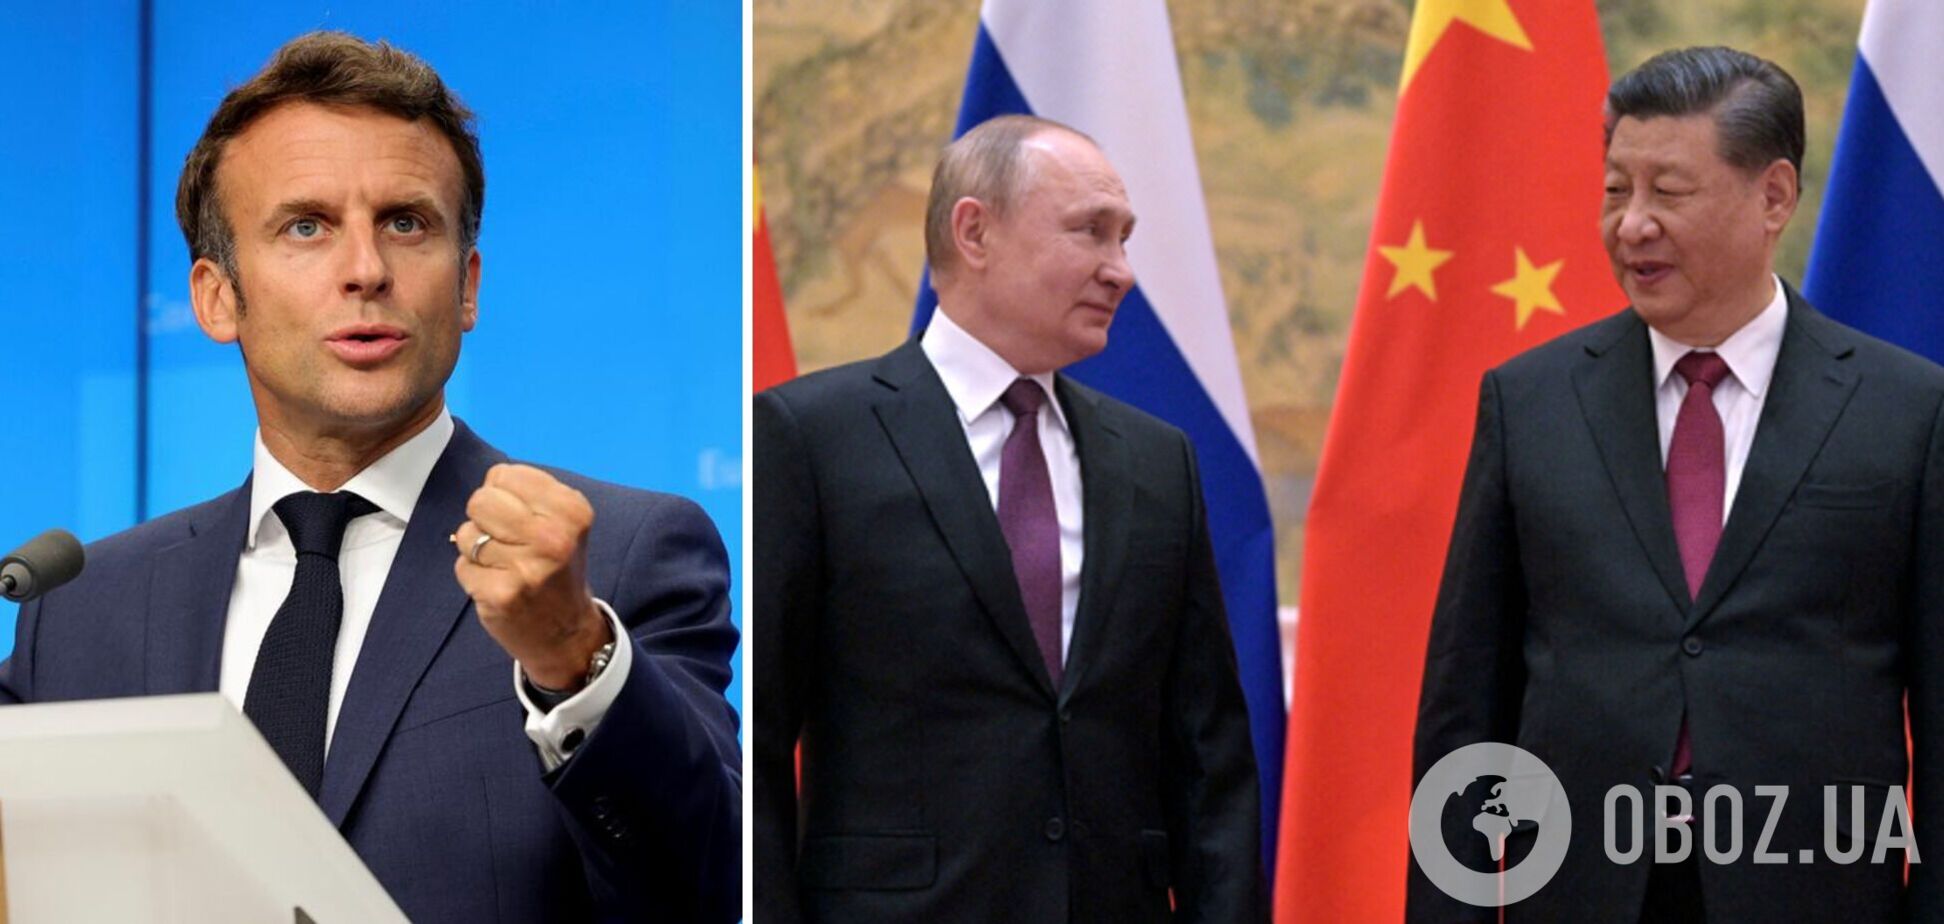 Макрон попросил Си Цзиньпина повлиять на Путина, чтобы тот вернулся за стол переговоров – СМИ